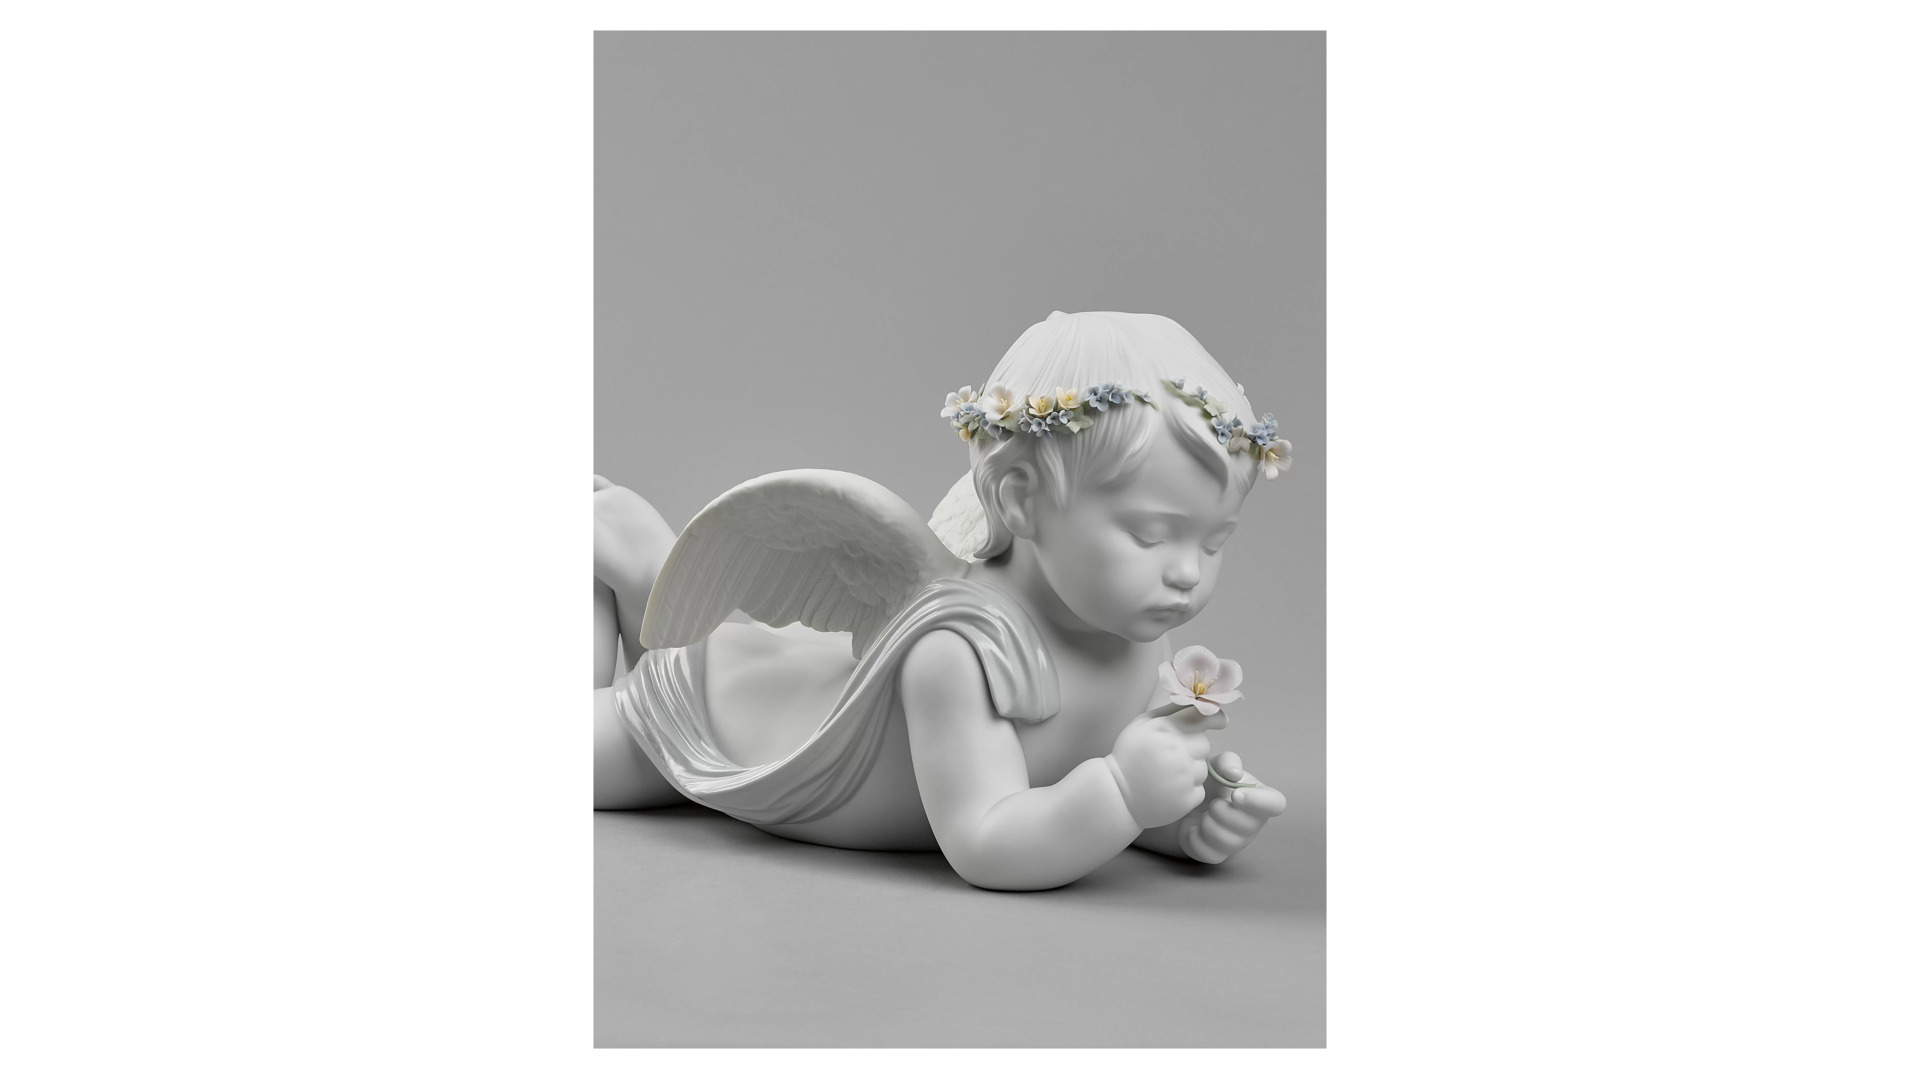 Фигурка Lladro Мой любимый ангел 49х26 см, фарфор